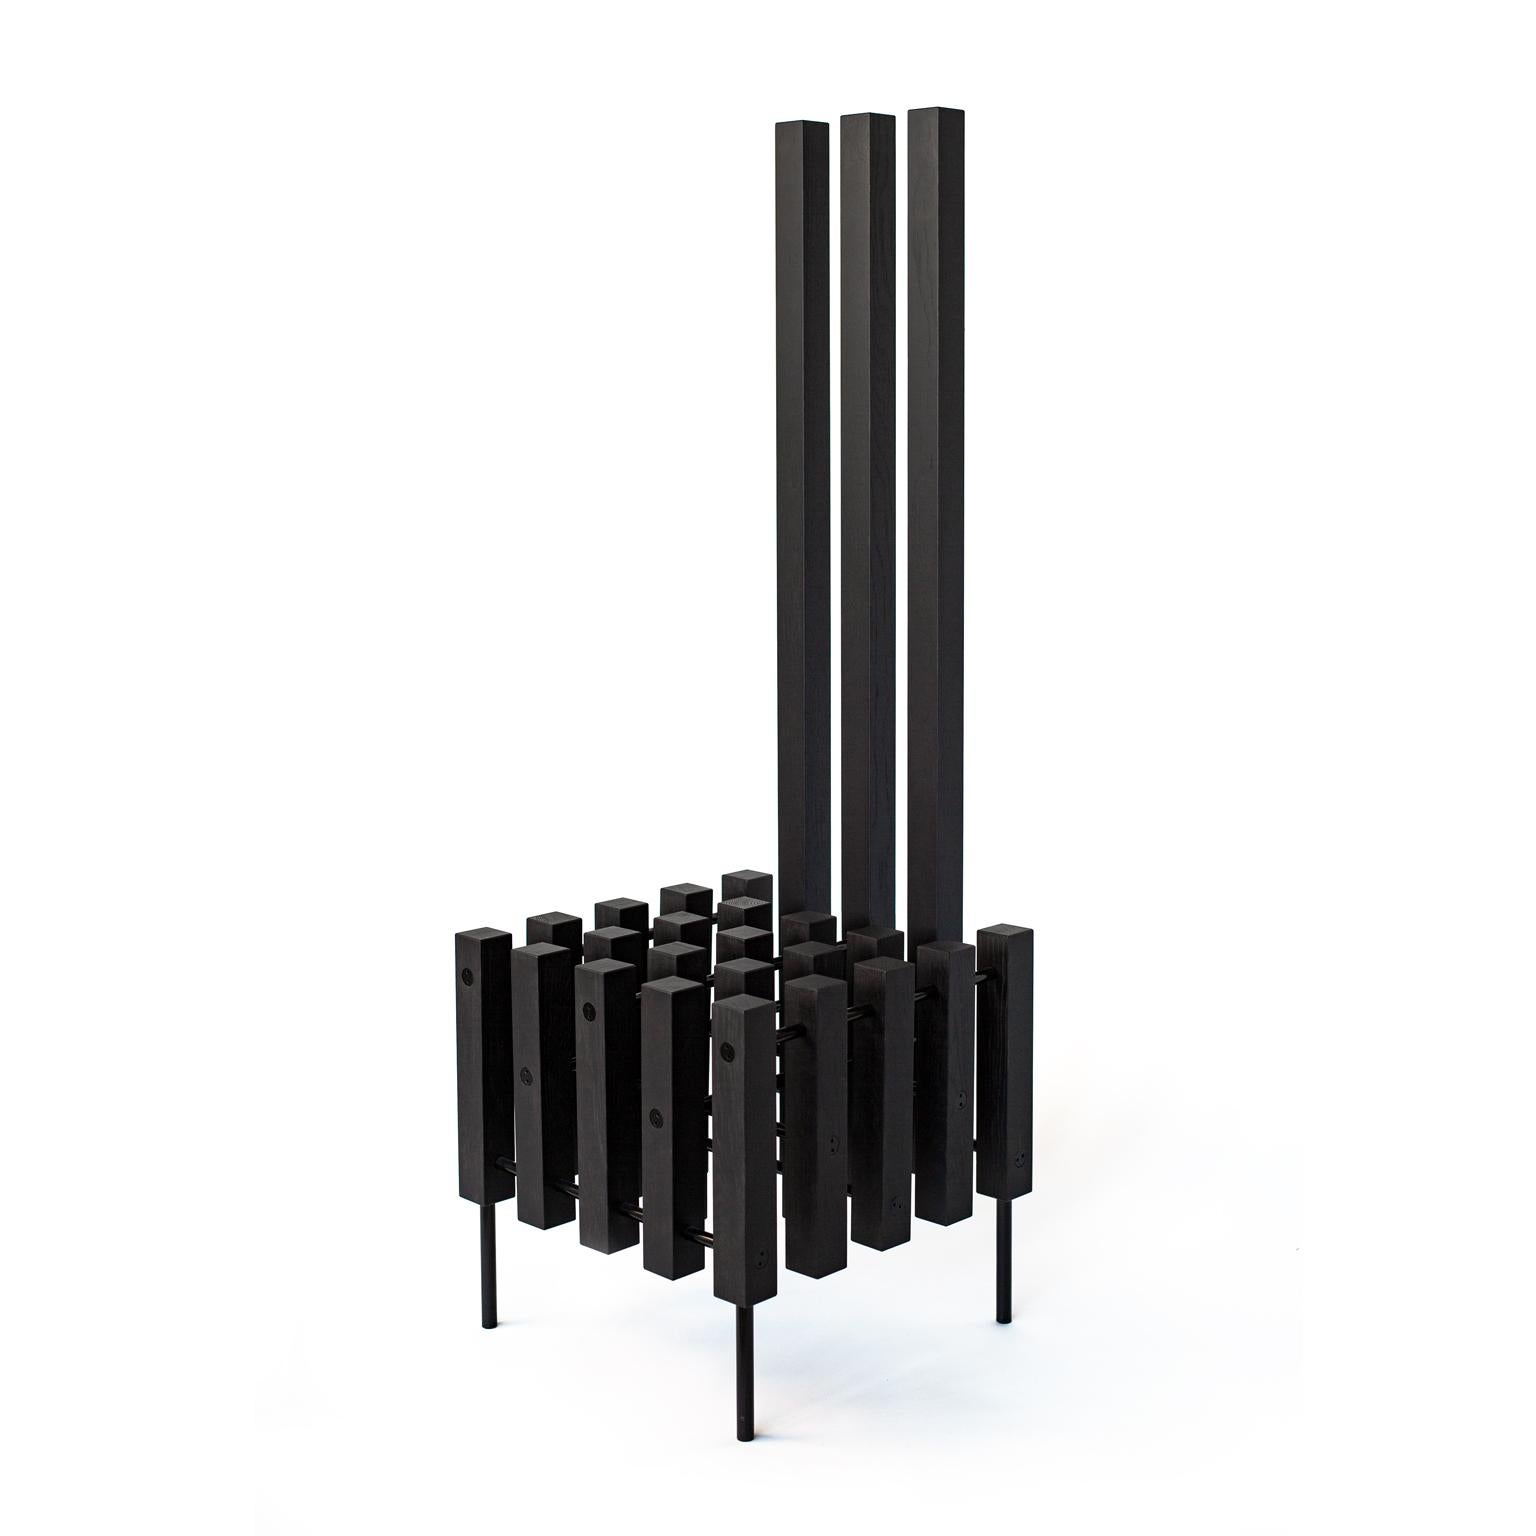 La chaise Objet Matrix est une chaise en bois fabriquée à la main, de forme géométrique, avec des détails en métal noir ou laiton.
La chaise Matrix est le fruit de la créativité et de l'expertise artisanale.
Il s'agit d'une forme d'expérience que